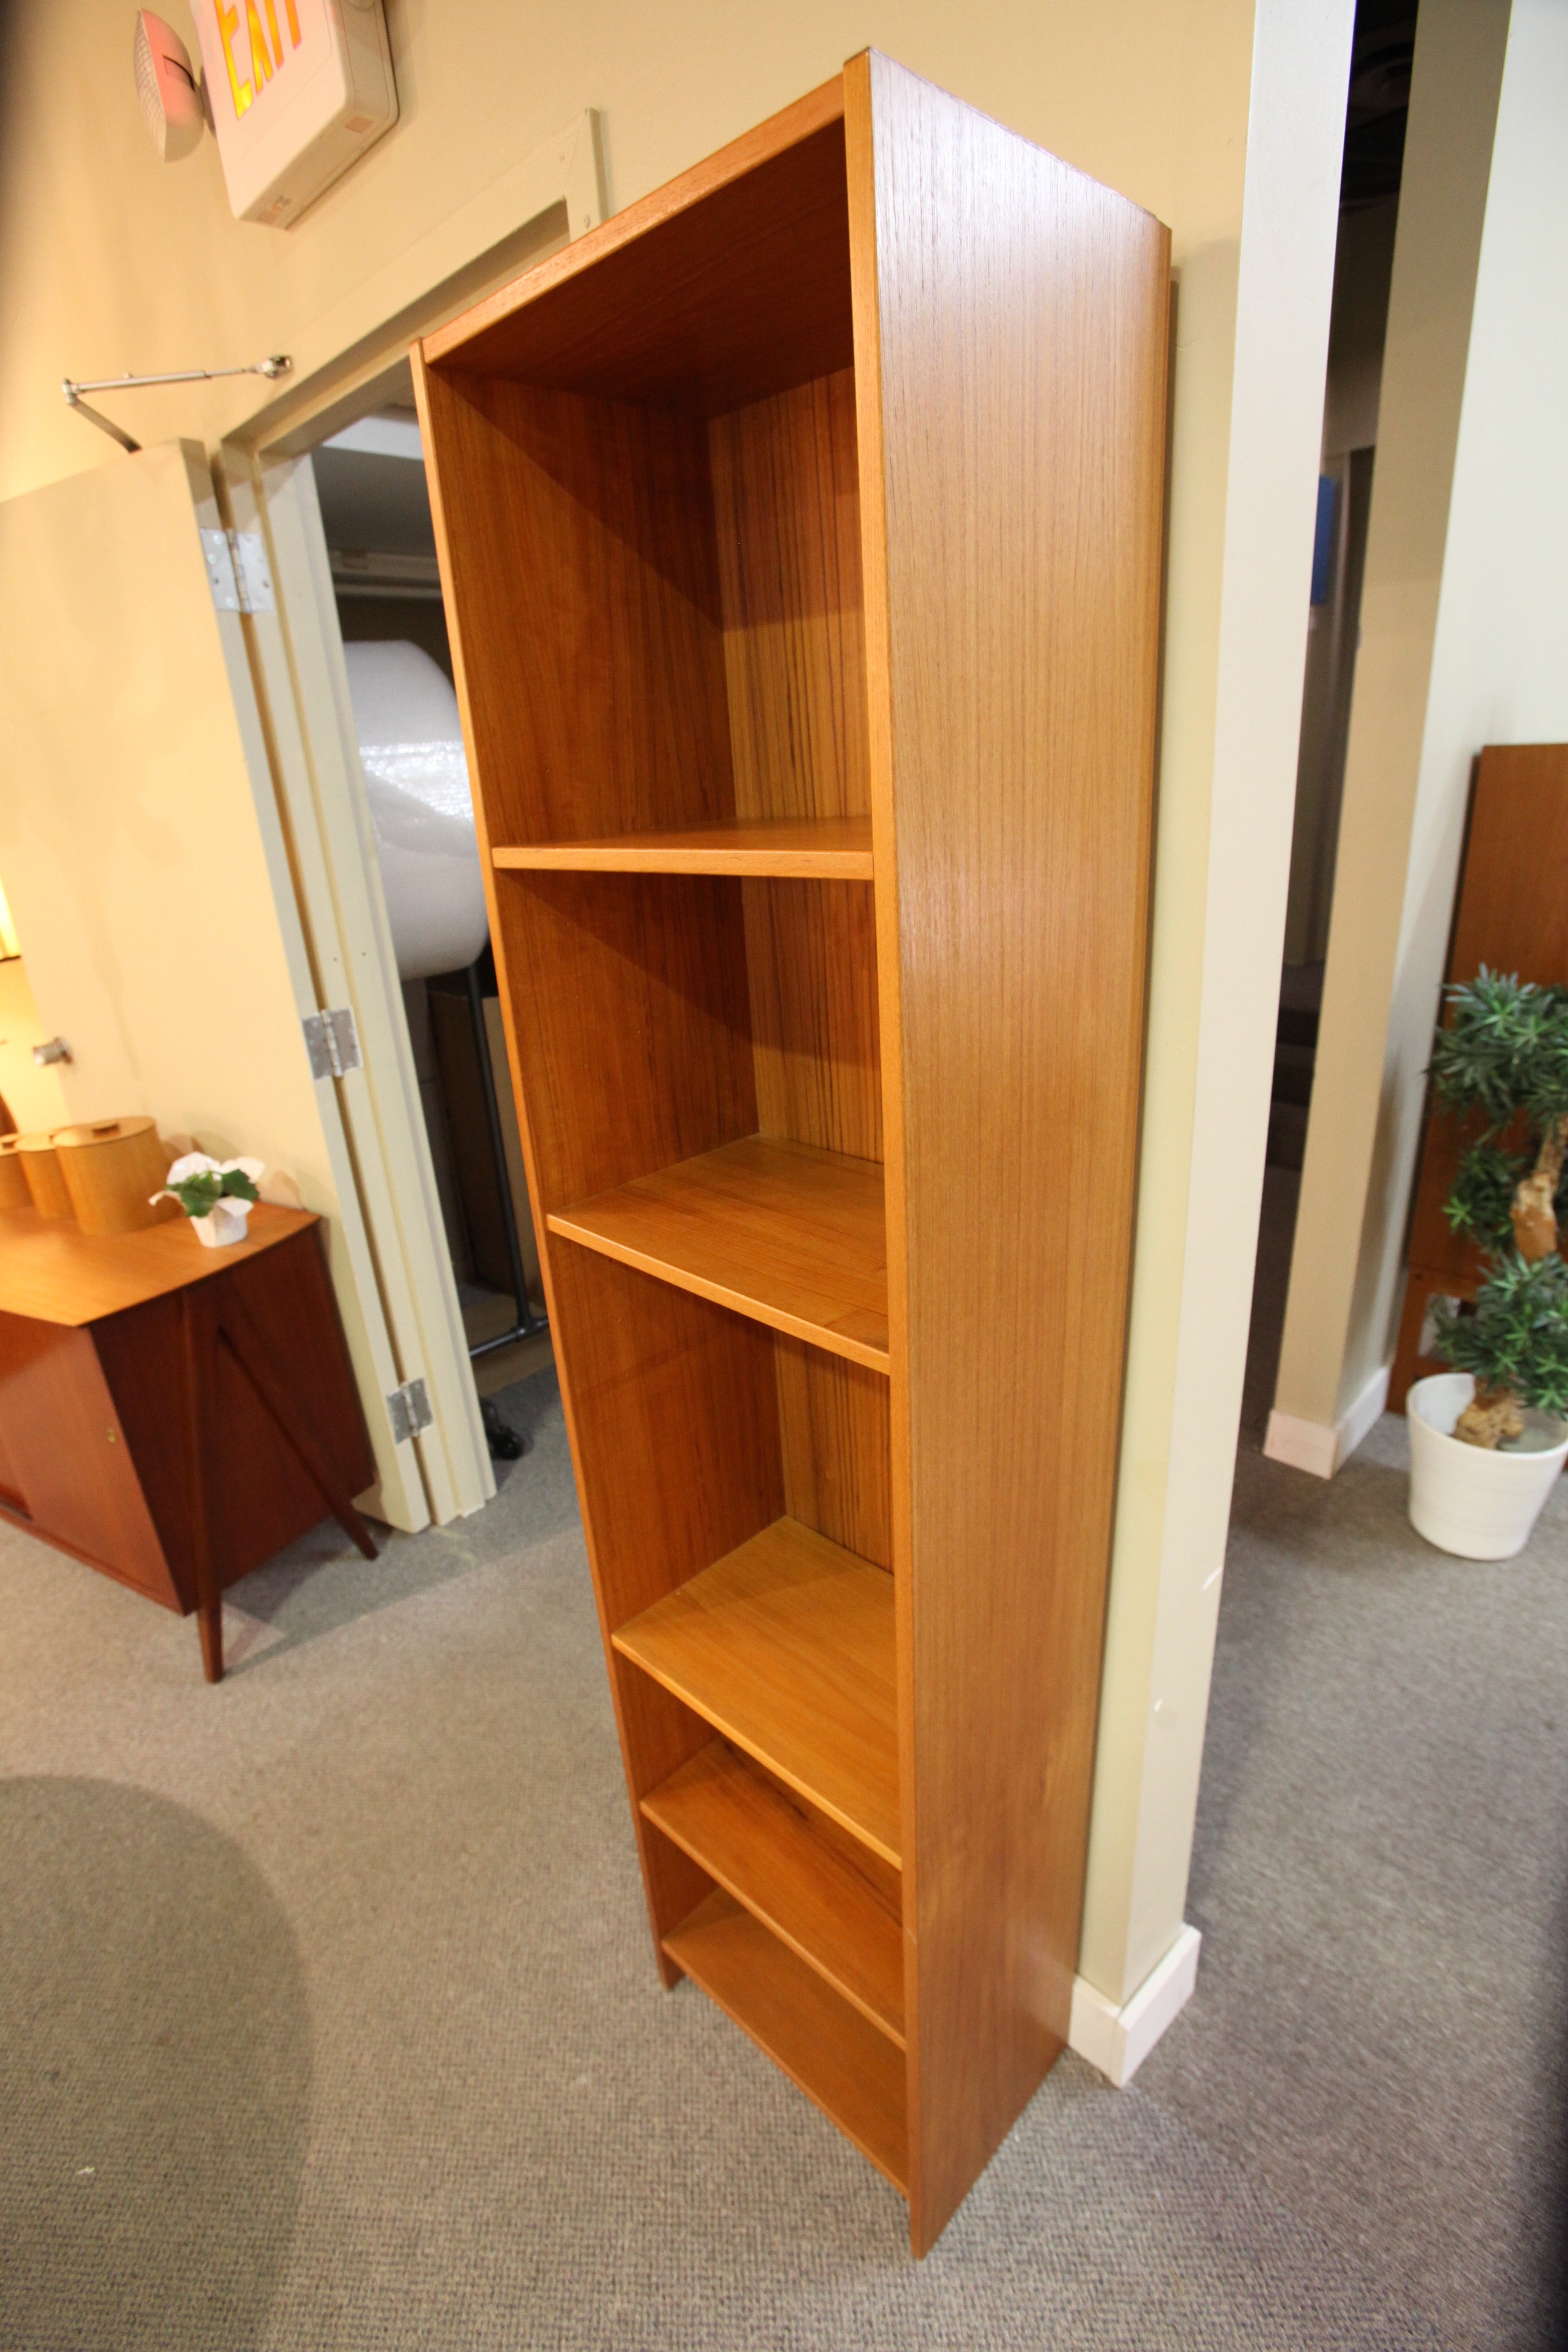 Tall Slim Teak Bookshelf (17.25"W x 71"H x 11.5"D)